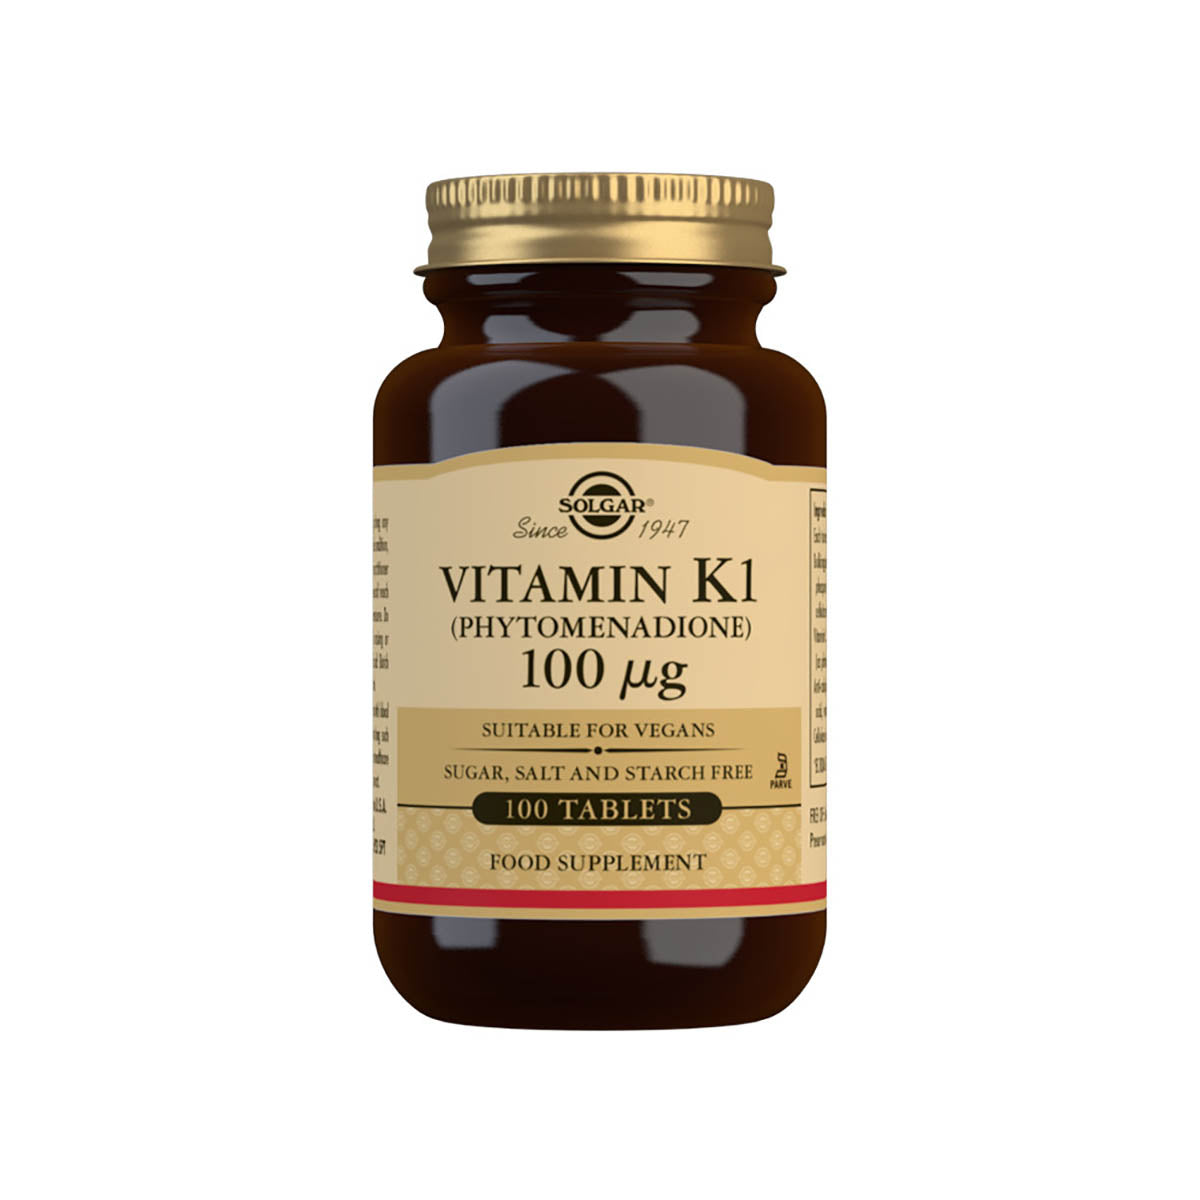 Solgar® Vitamin K1 (Phytomenadione) 100 µg Tablets - Pack of 100